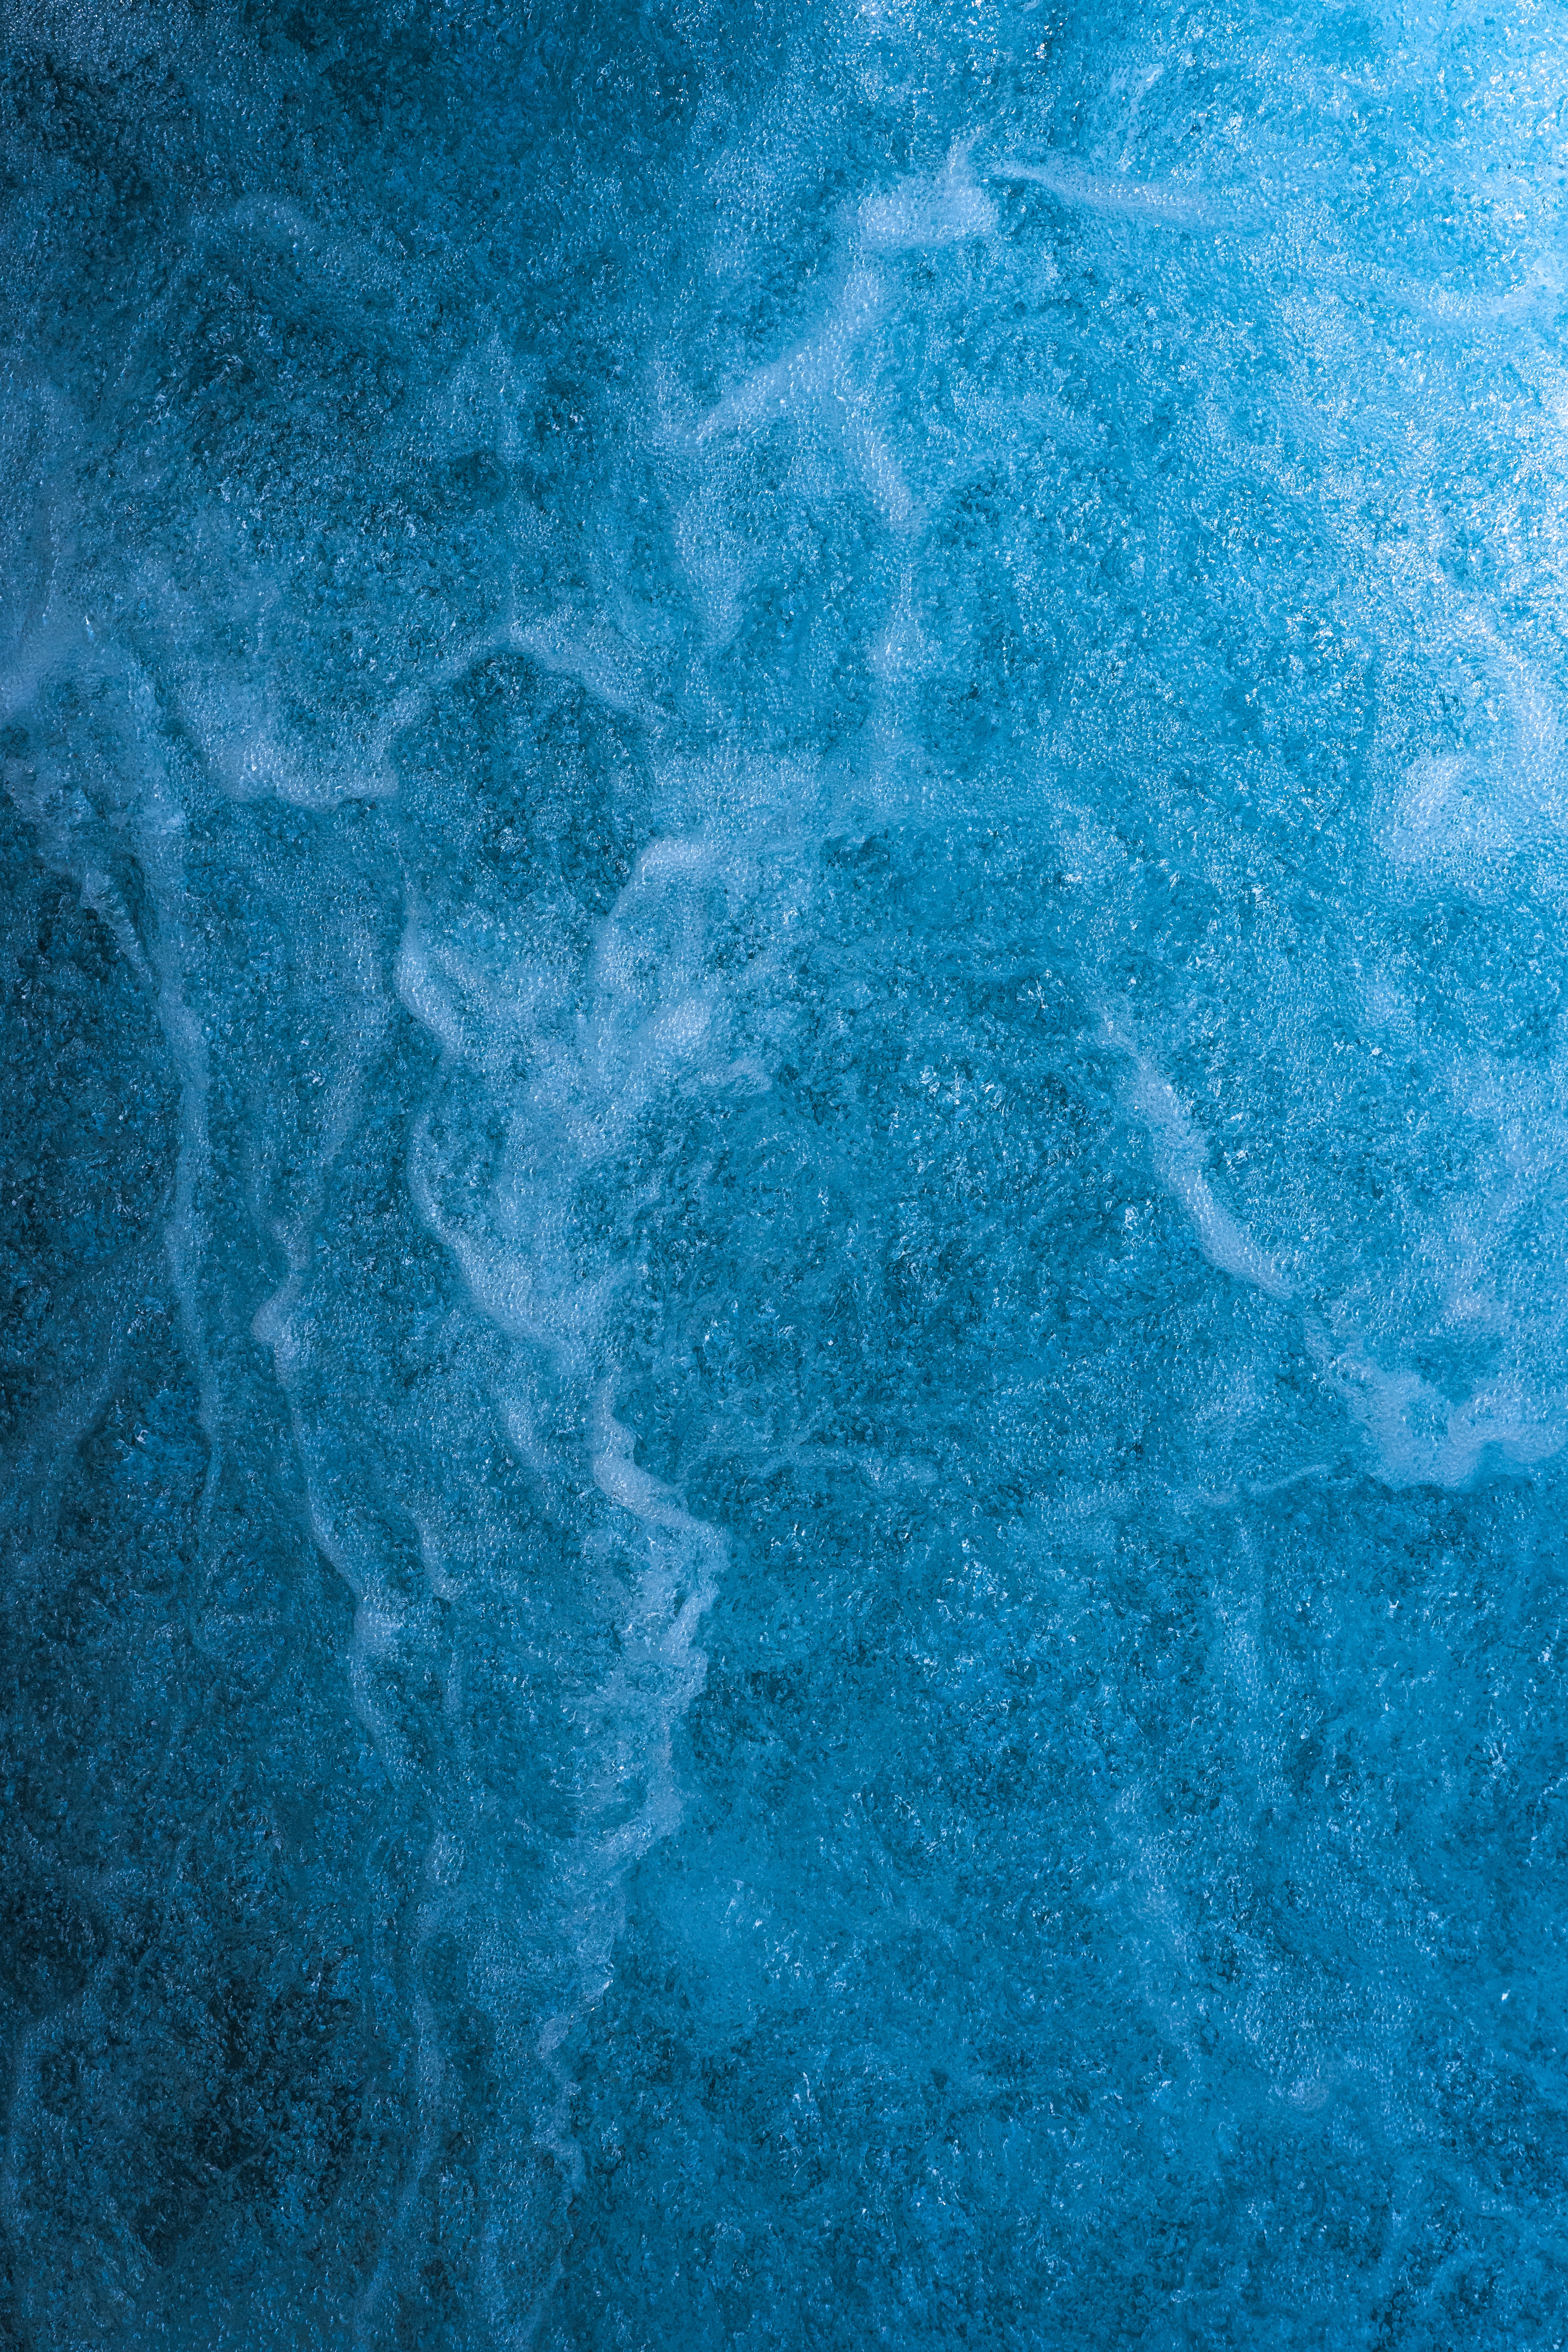 textures, texture, water, waves, blue, liquid cellphone